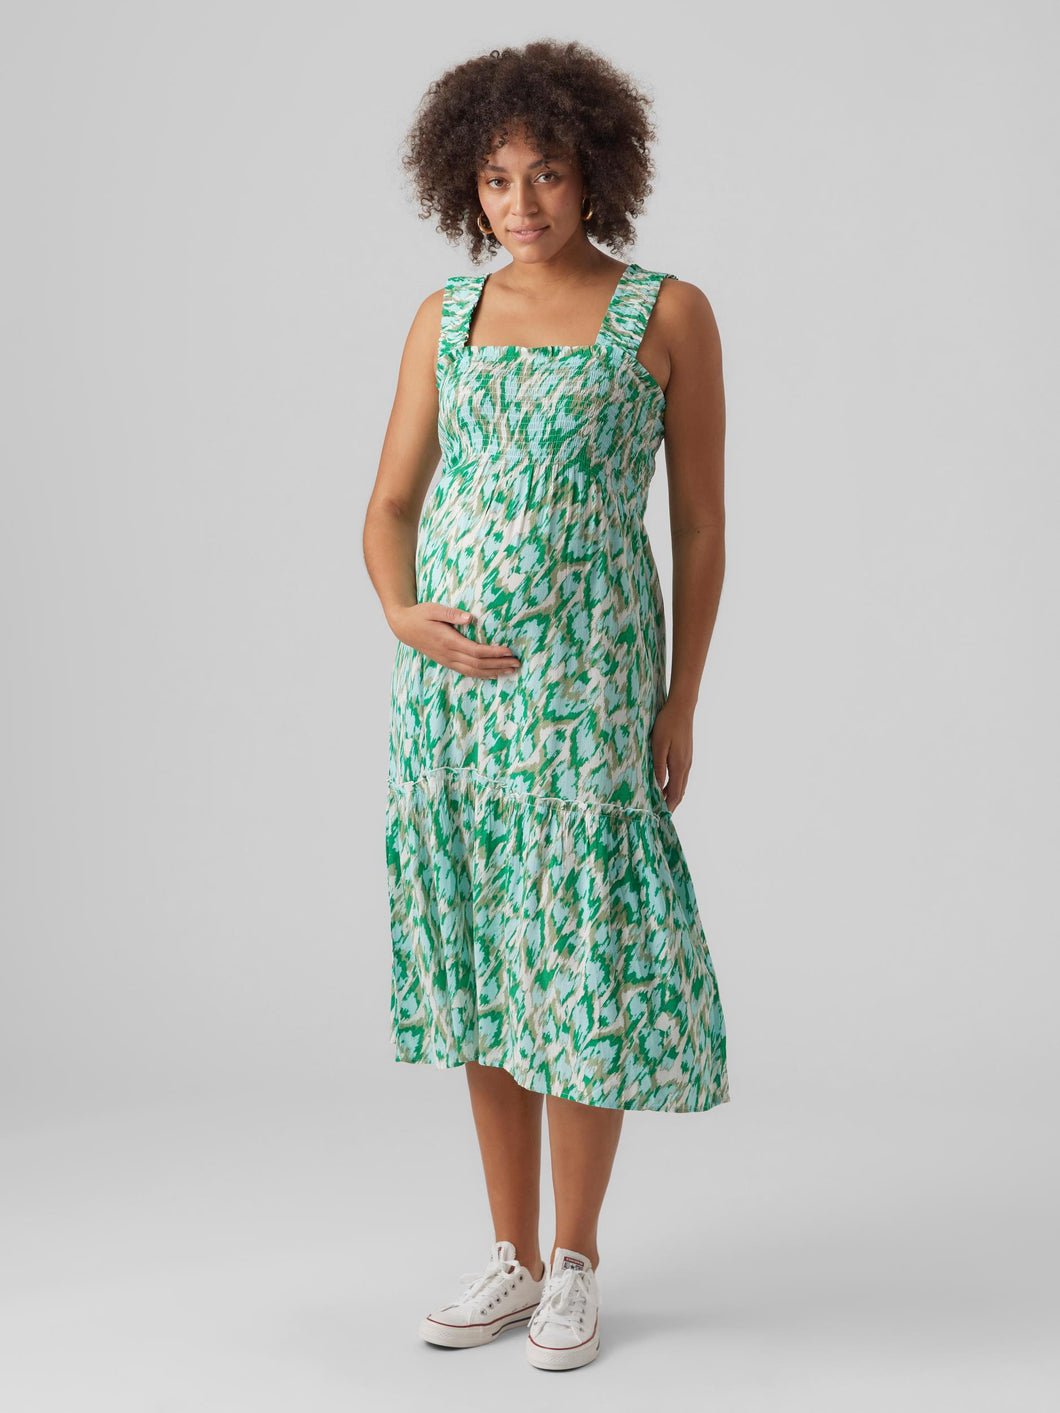 Vero Moda Maternity Umstandskleid online kaufen und mieten bei Mutterkleid Freizeitkleid grün Allover Print Hängerchen ohne Arm aus nachhaltiger Viskose mit Volantsaum